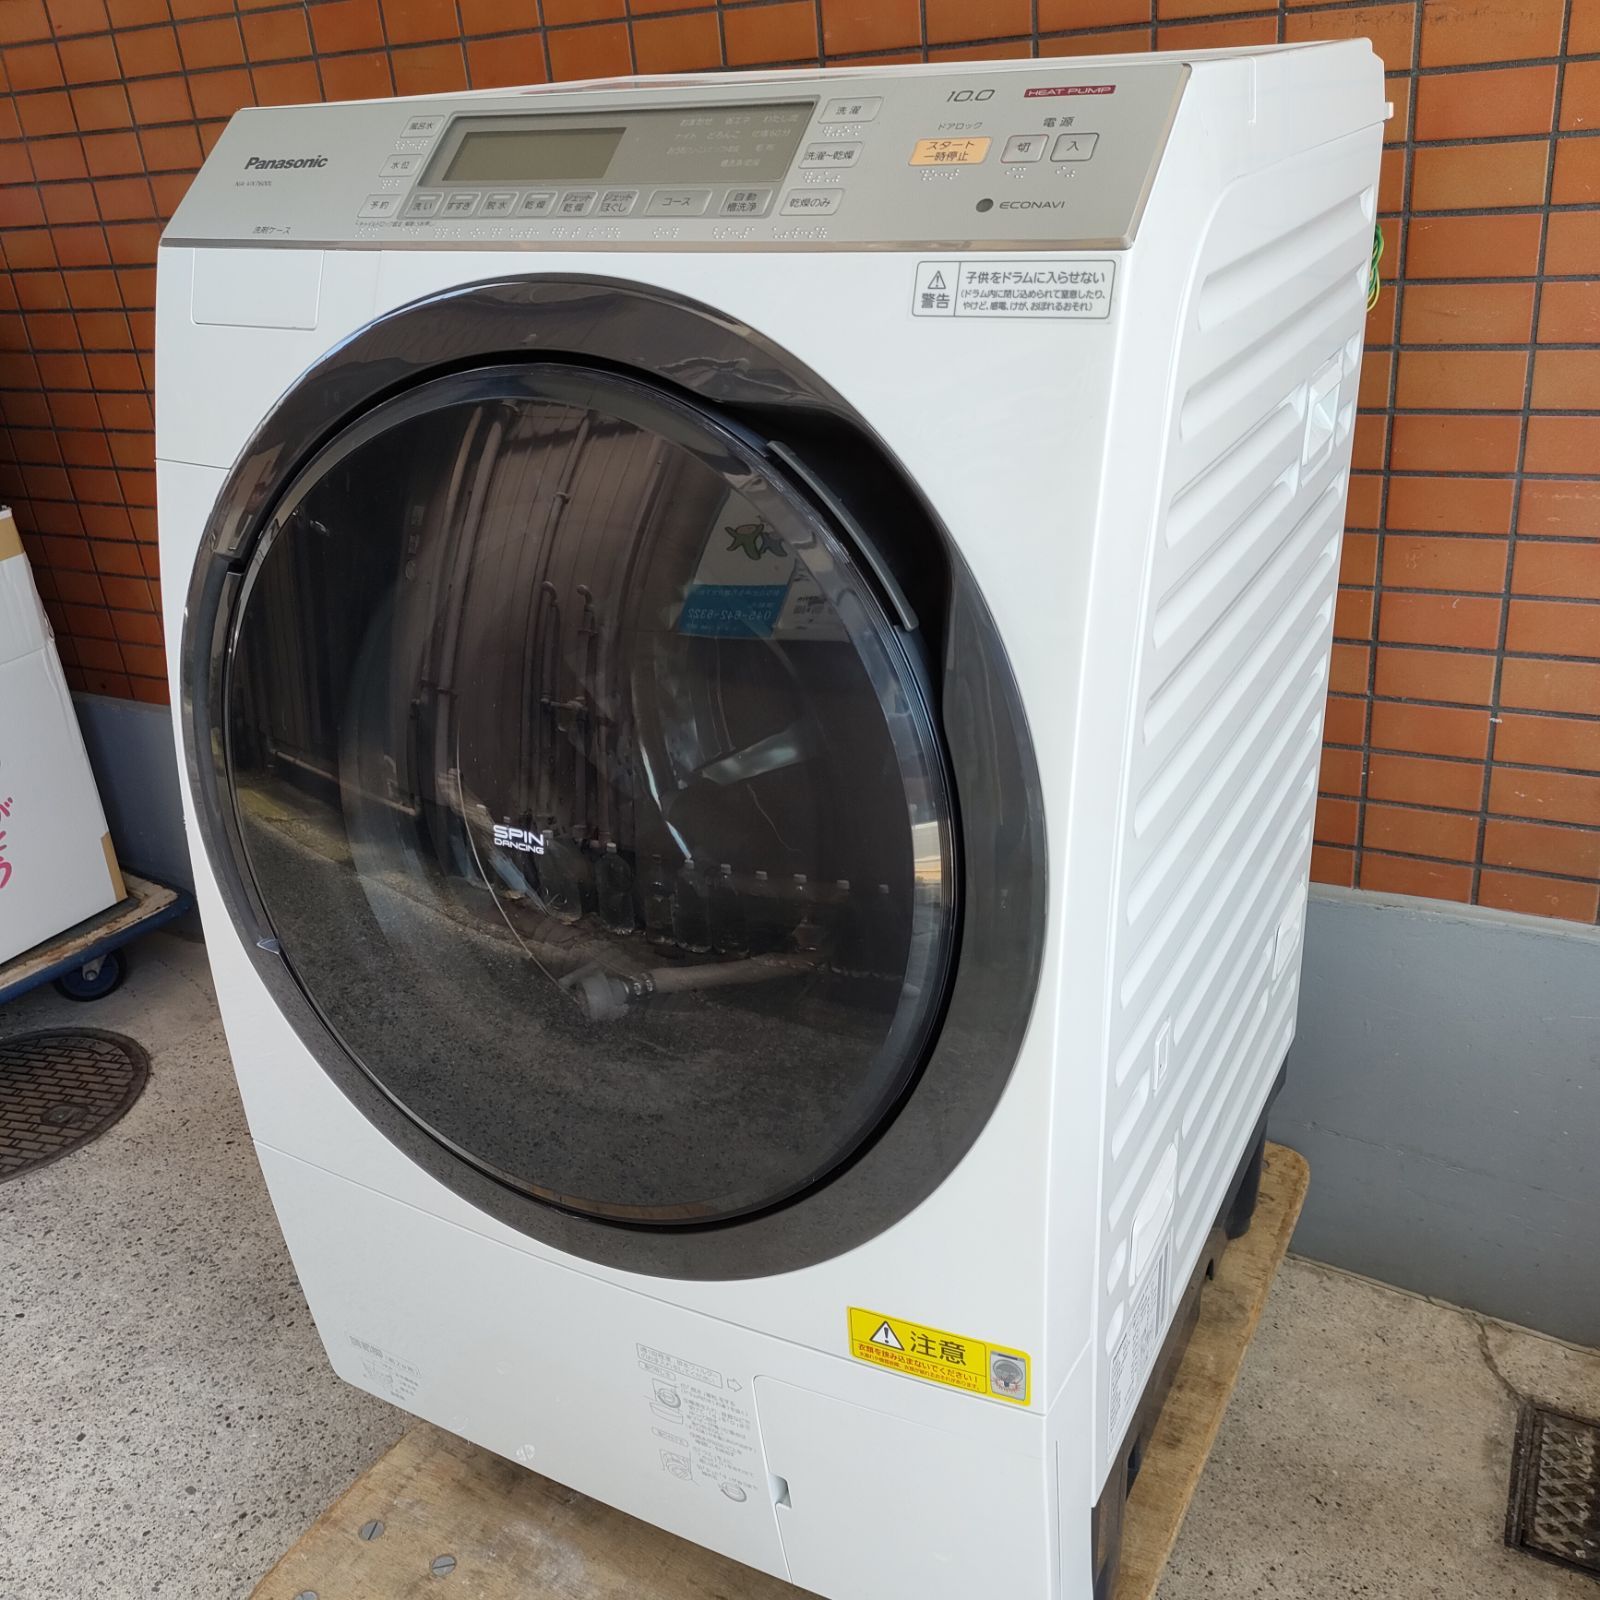 ◇Panasonic ドラム式洗濯乾燥機 NA-VX7600L - スリーエス - メルカリ